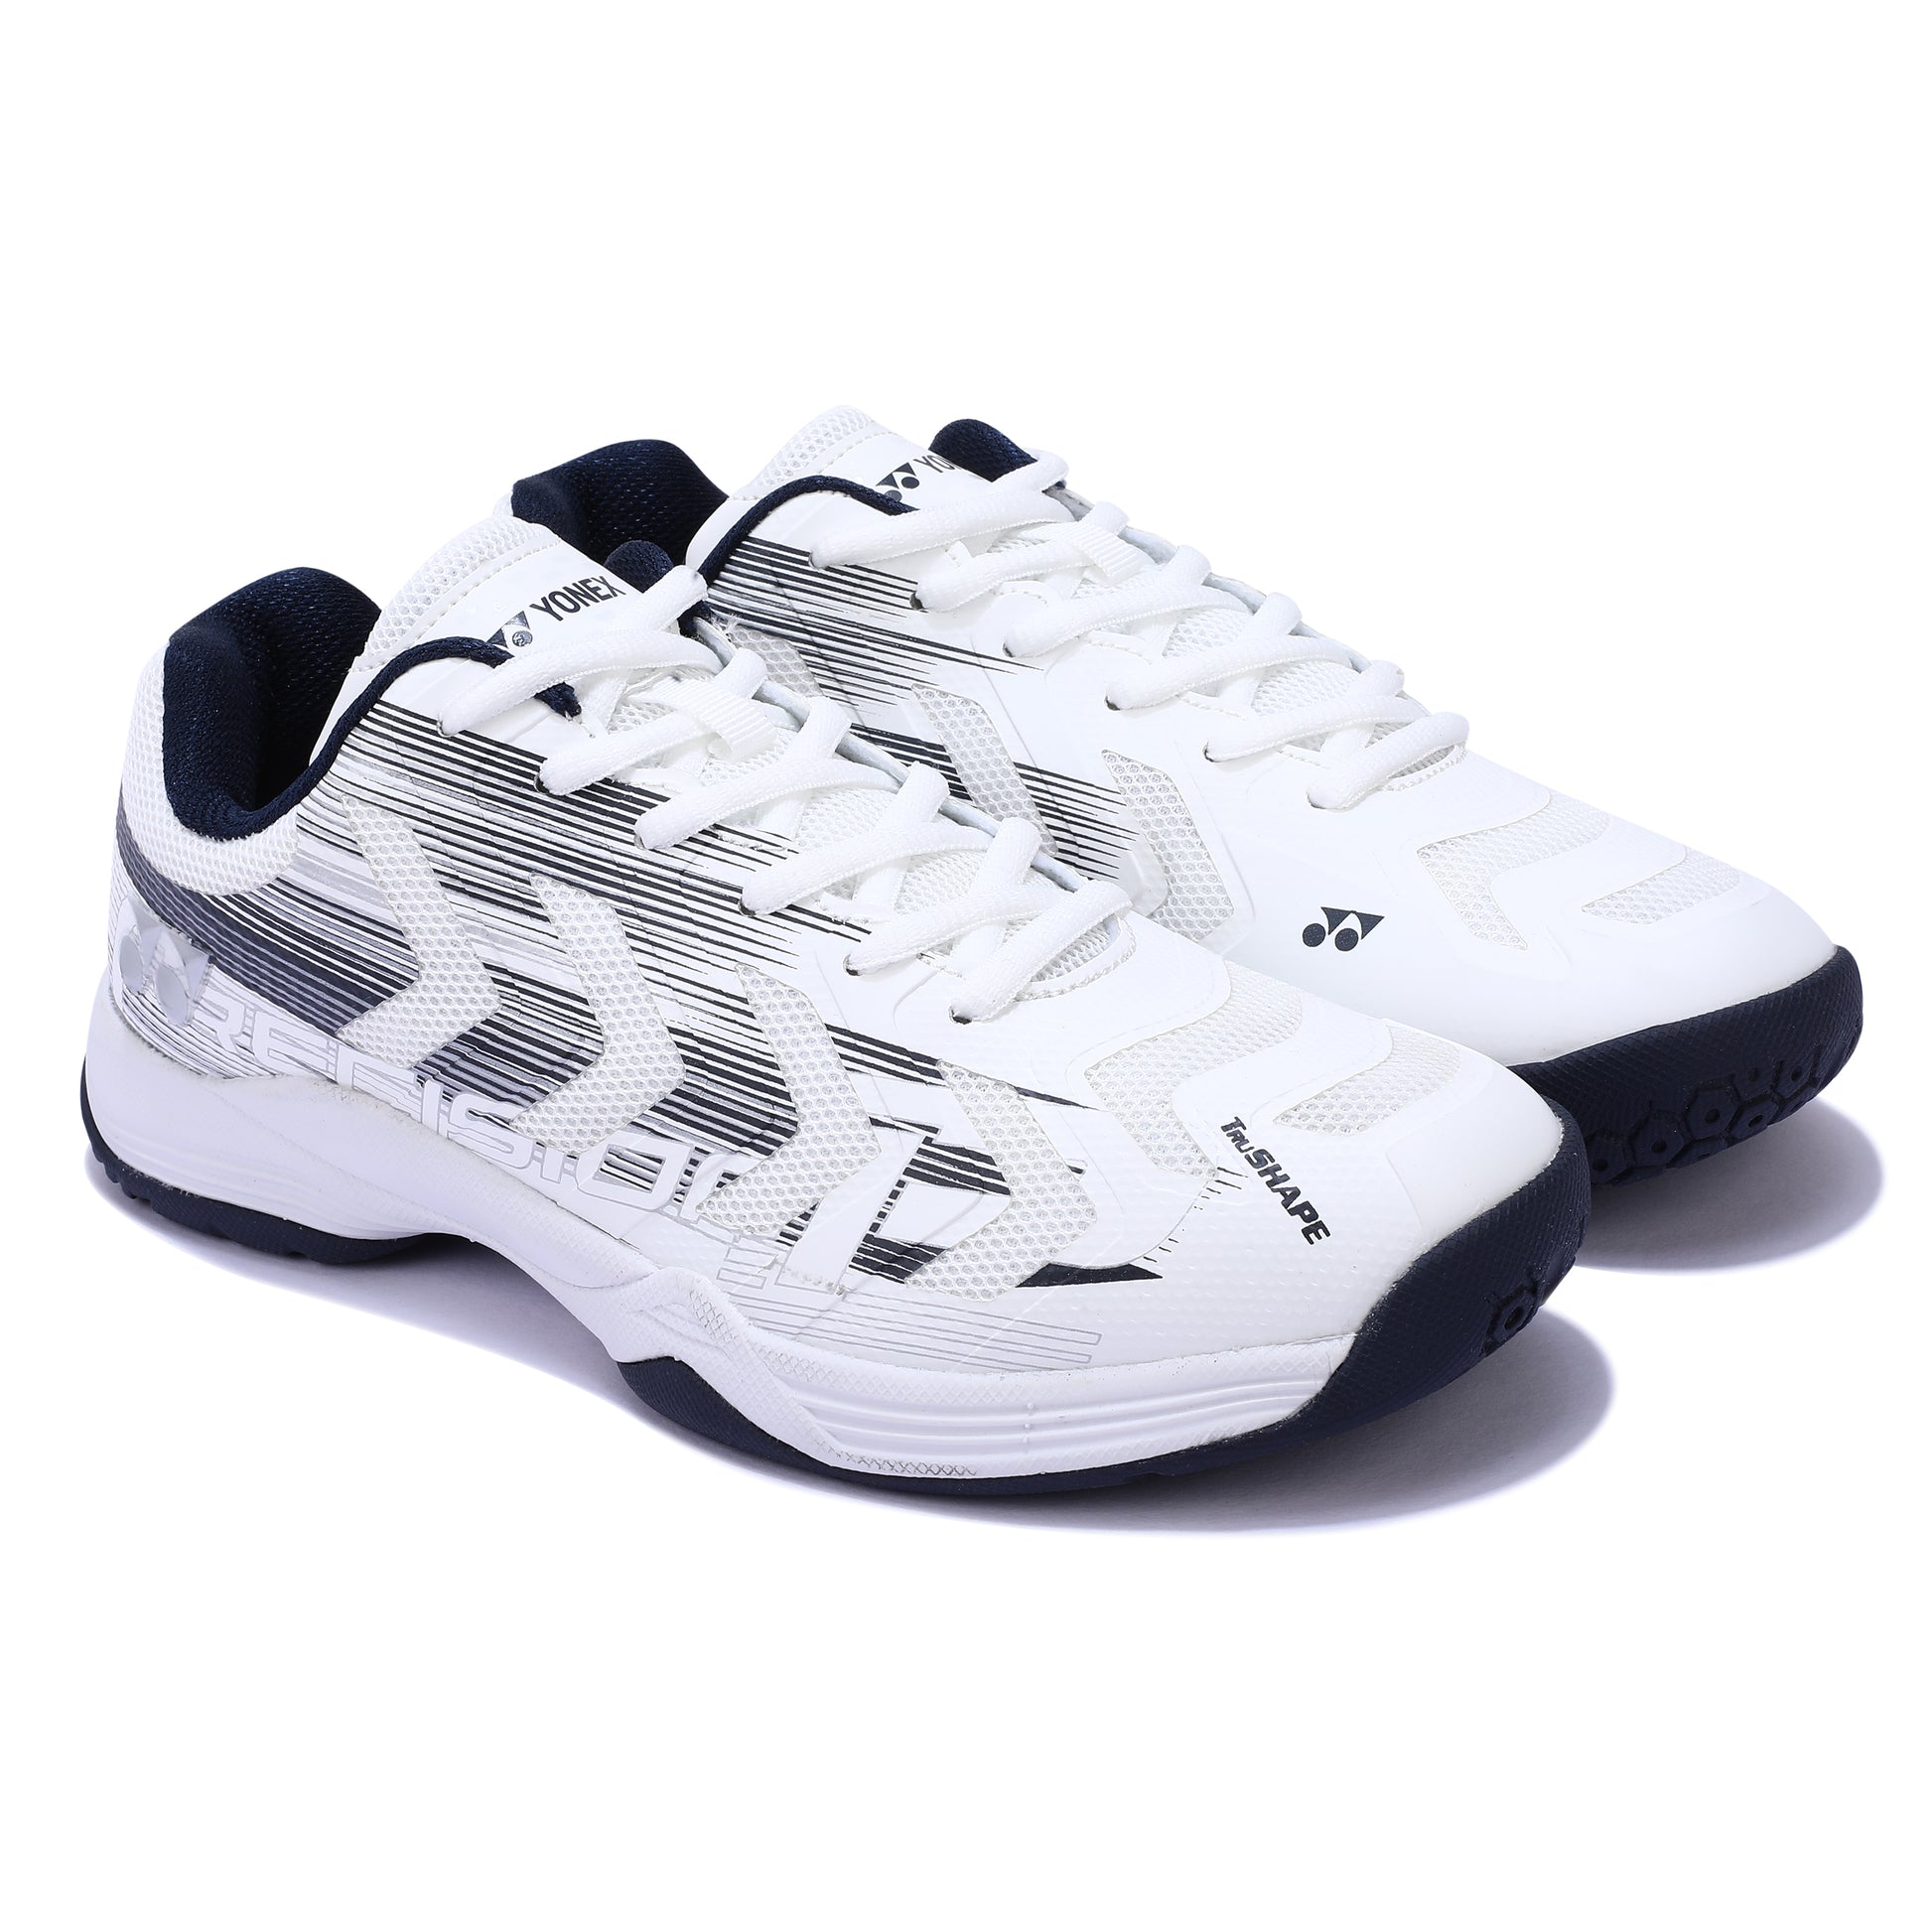 Yonex Precision 2 Men's Badminton Shoes - Best Price online Prokicksports.com